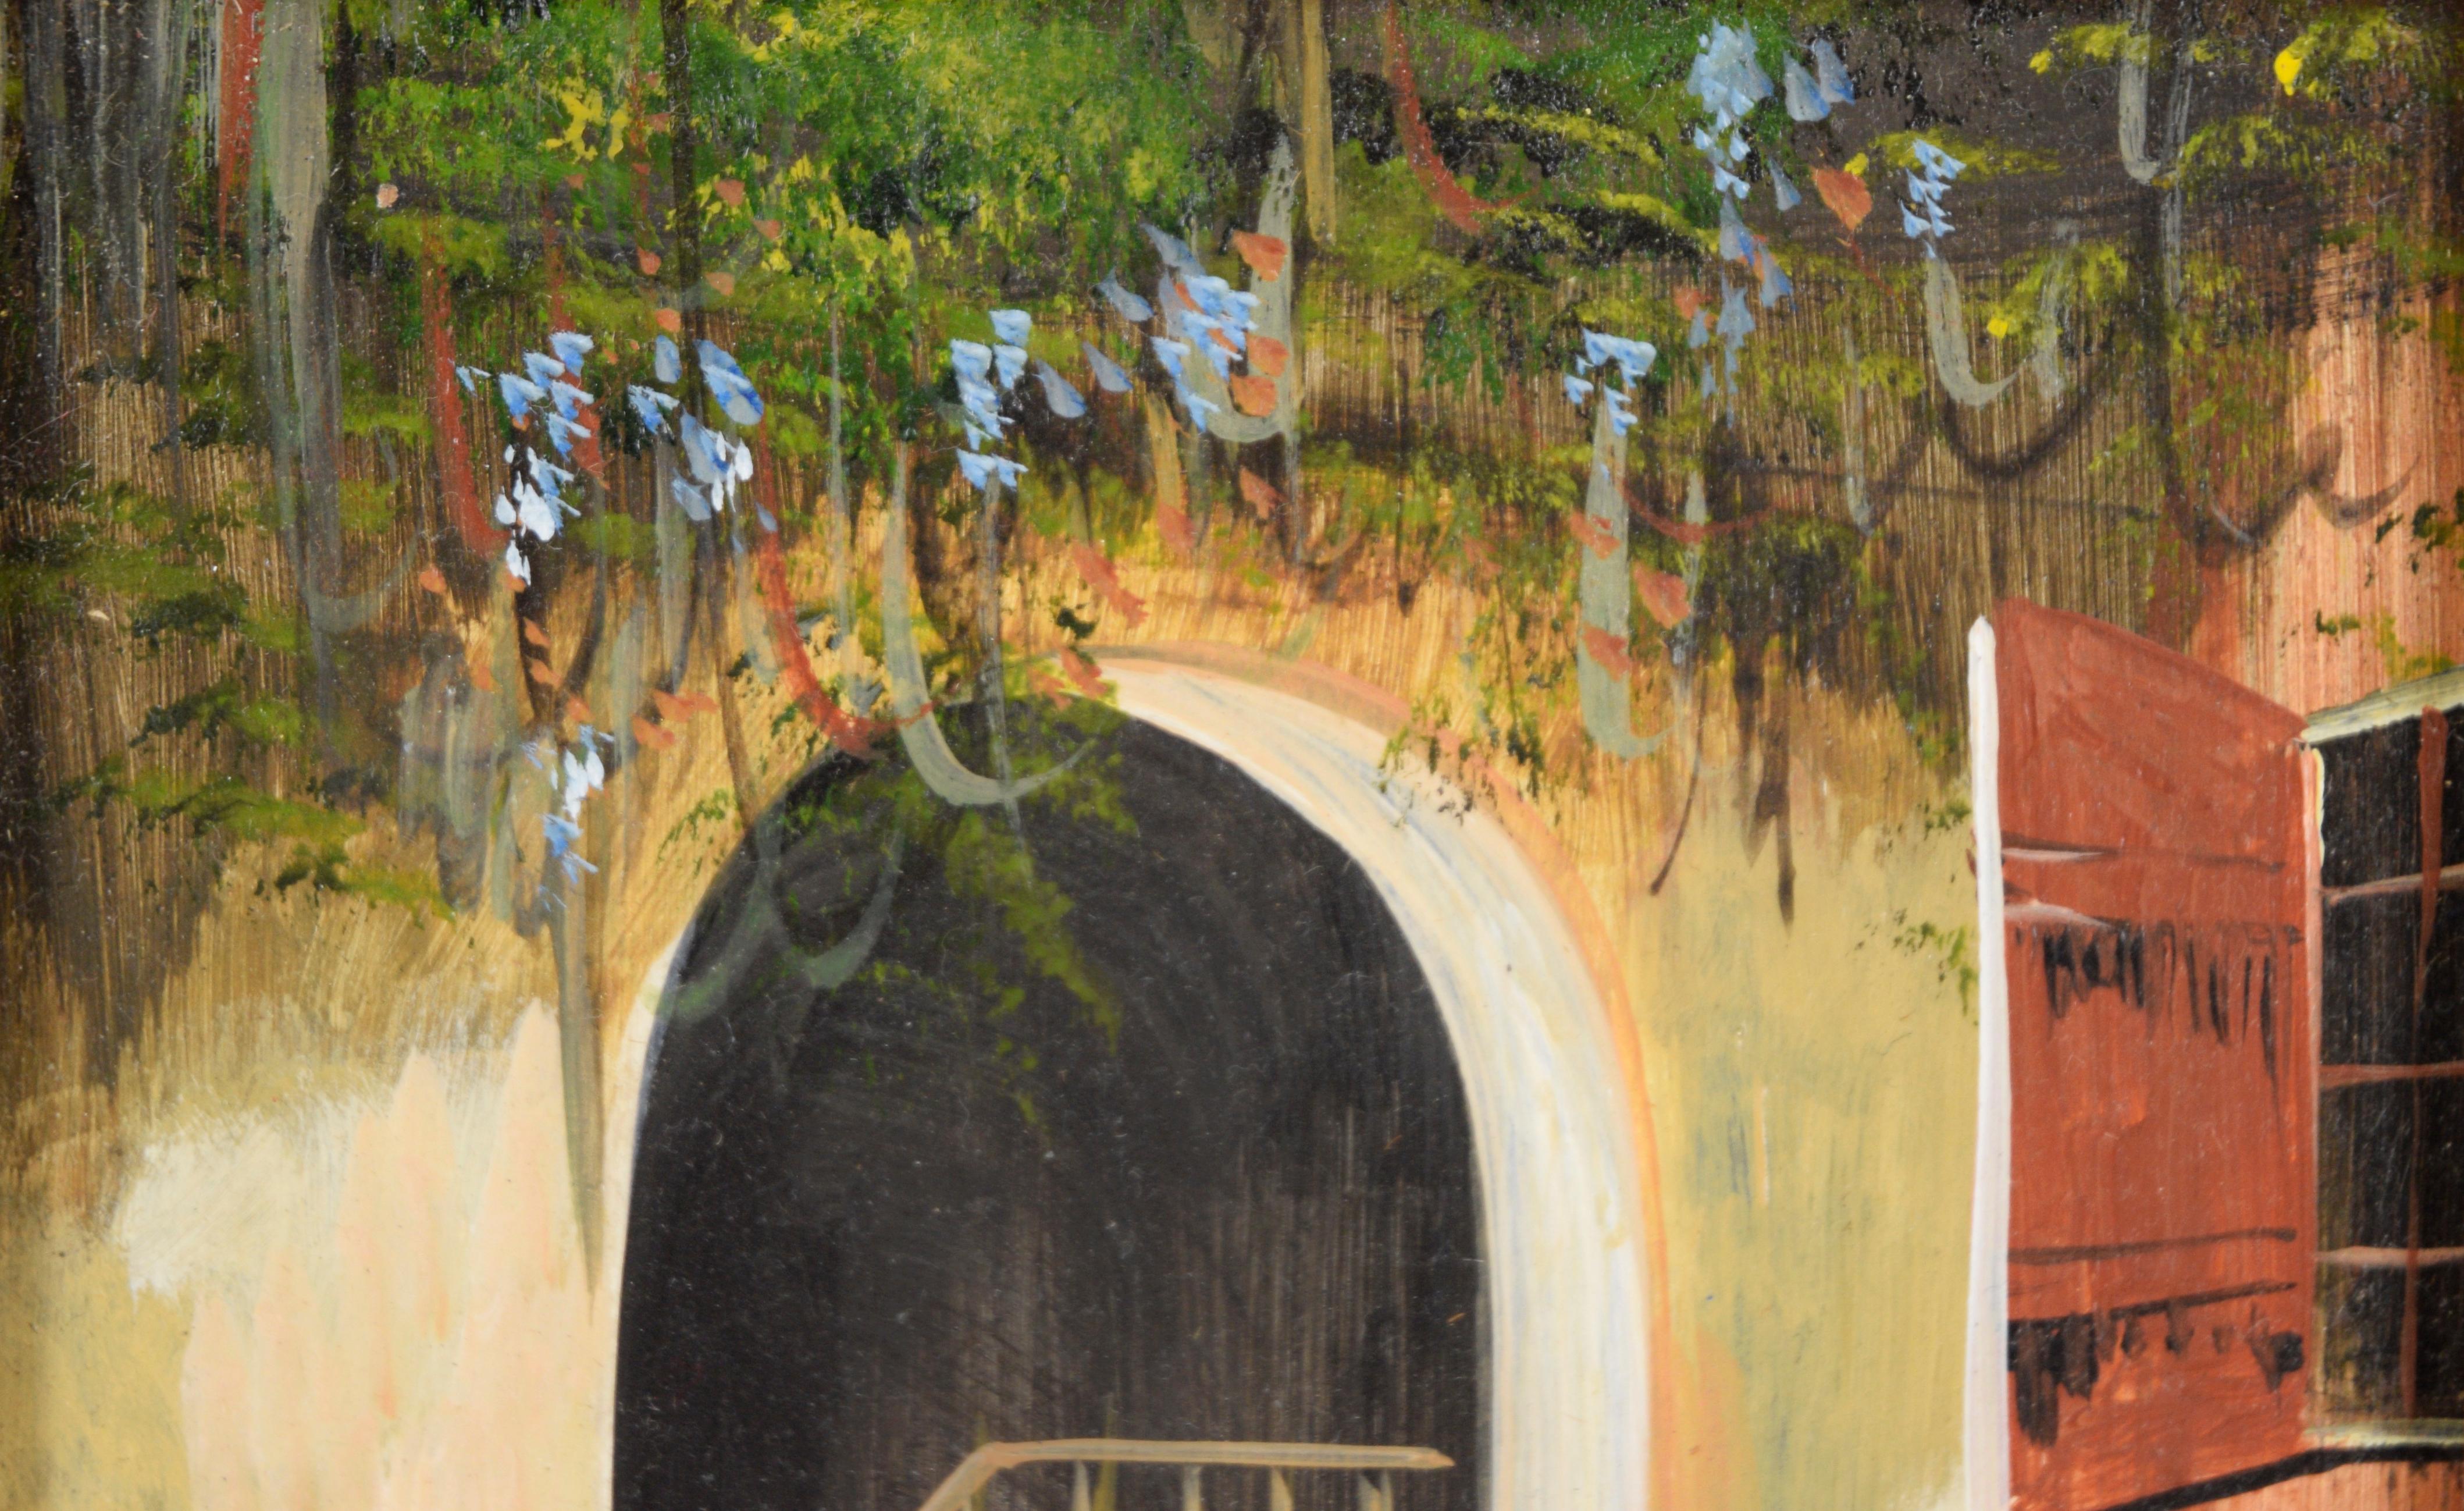 Die Treppe - 1987 Original Öl auf Masonit

Original-Ölgemälde von 1987, das eine Treppe hinter einem gemauerten Torbogen zeigt, von Miriam Ragan (Amerikanerin, 1930-2014). Der Betrachter blickt weiter in Richtung Treppe, Pflanzen sind an der Decke